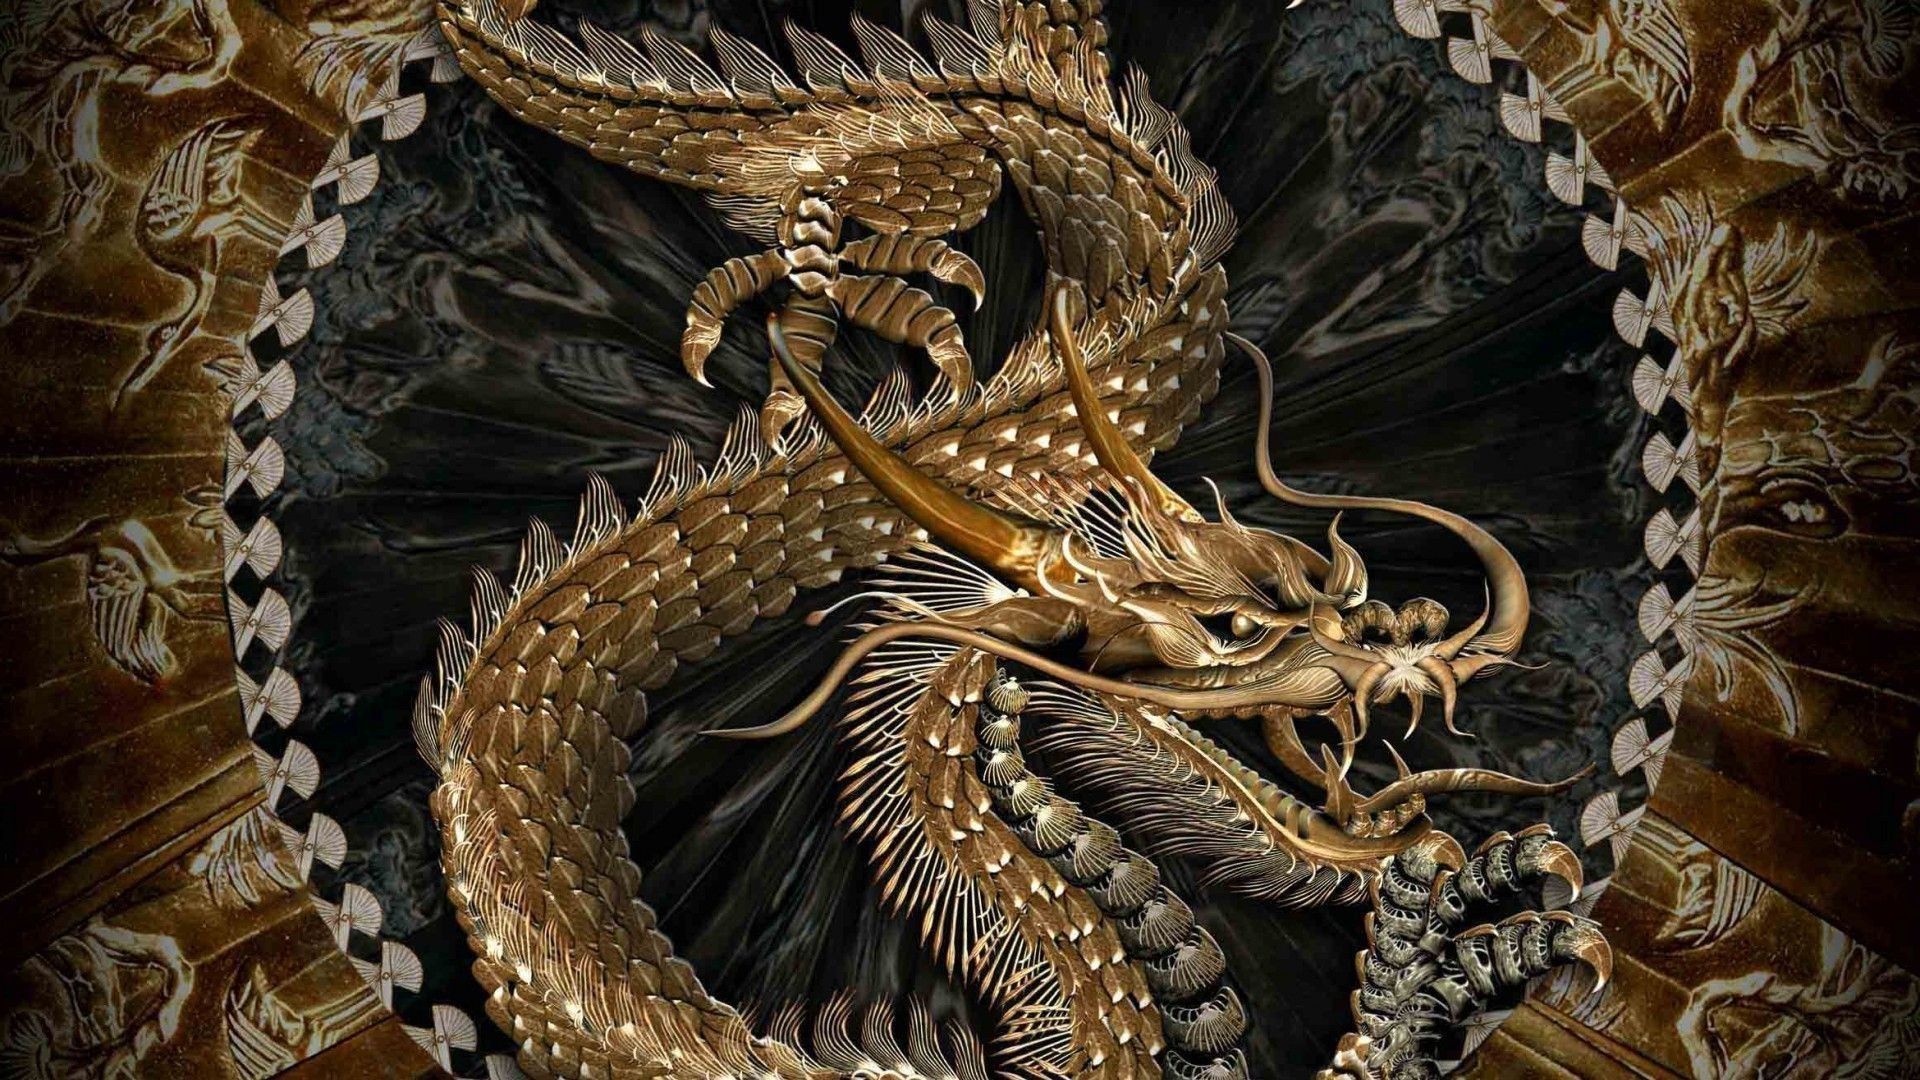 Khám phá vẻ đẹp phi thường của rồng vàng 3D